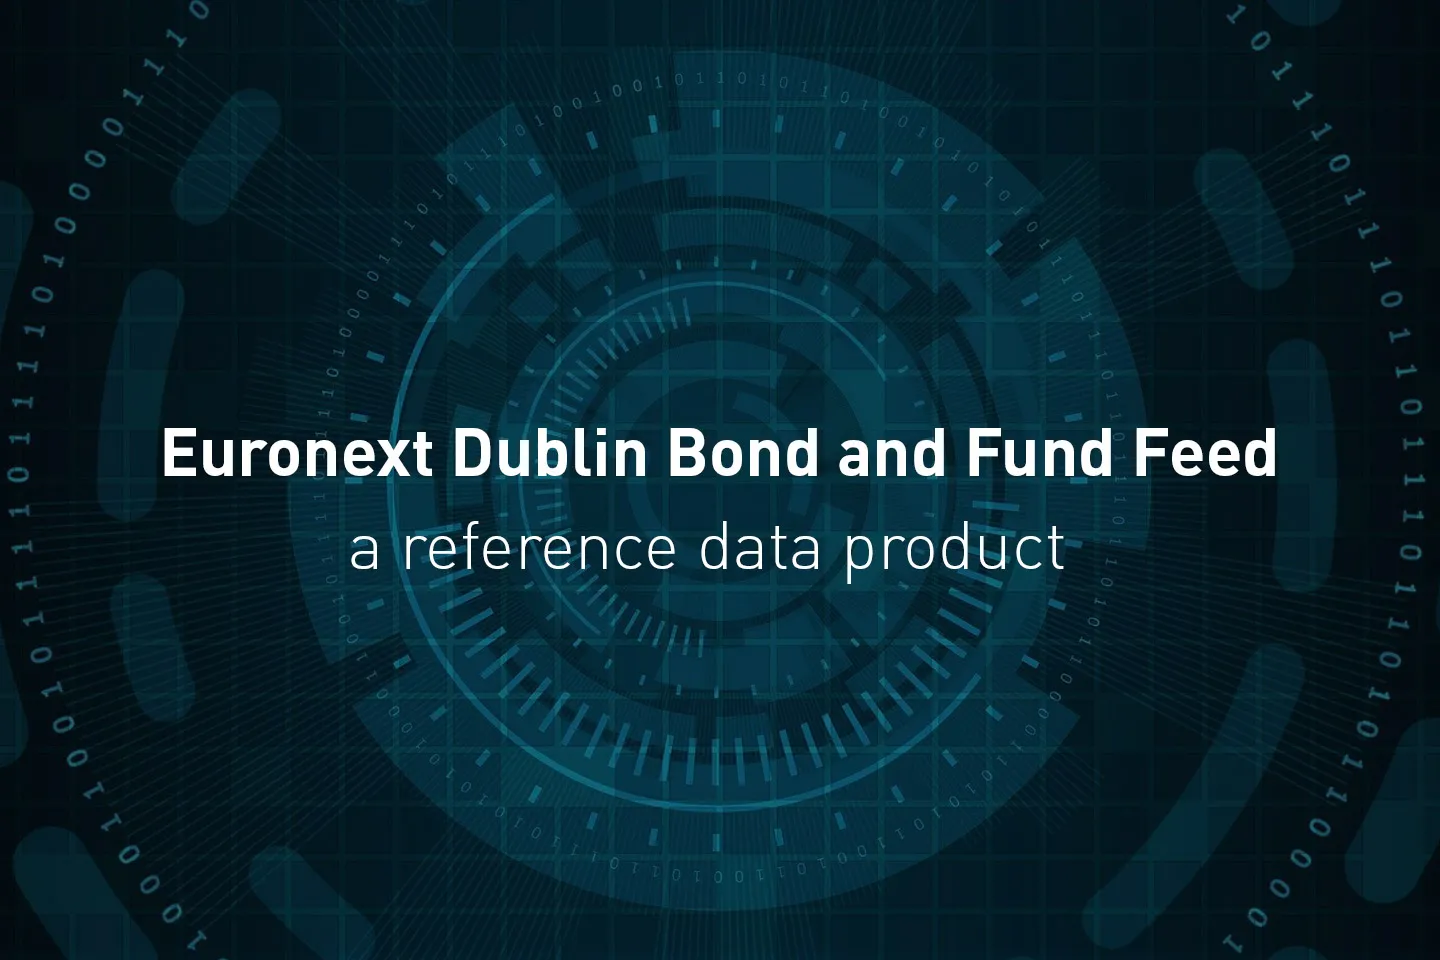 Dublin Bond & Fund Feed